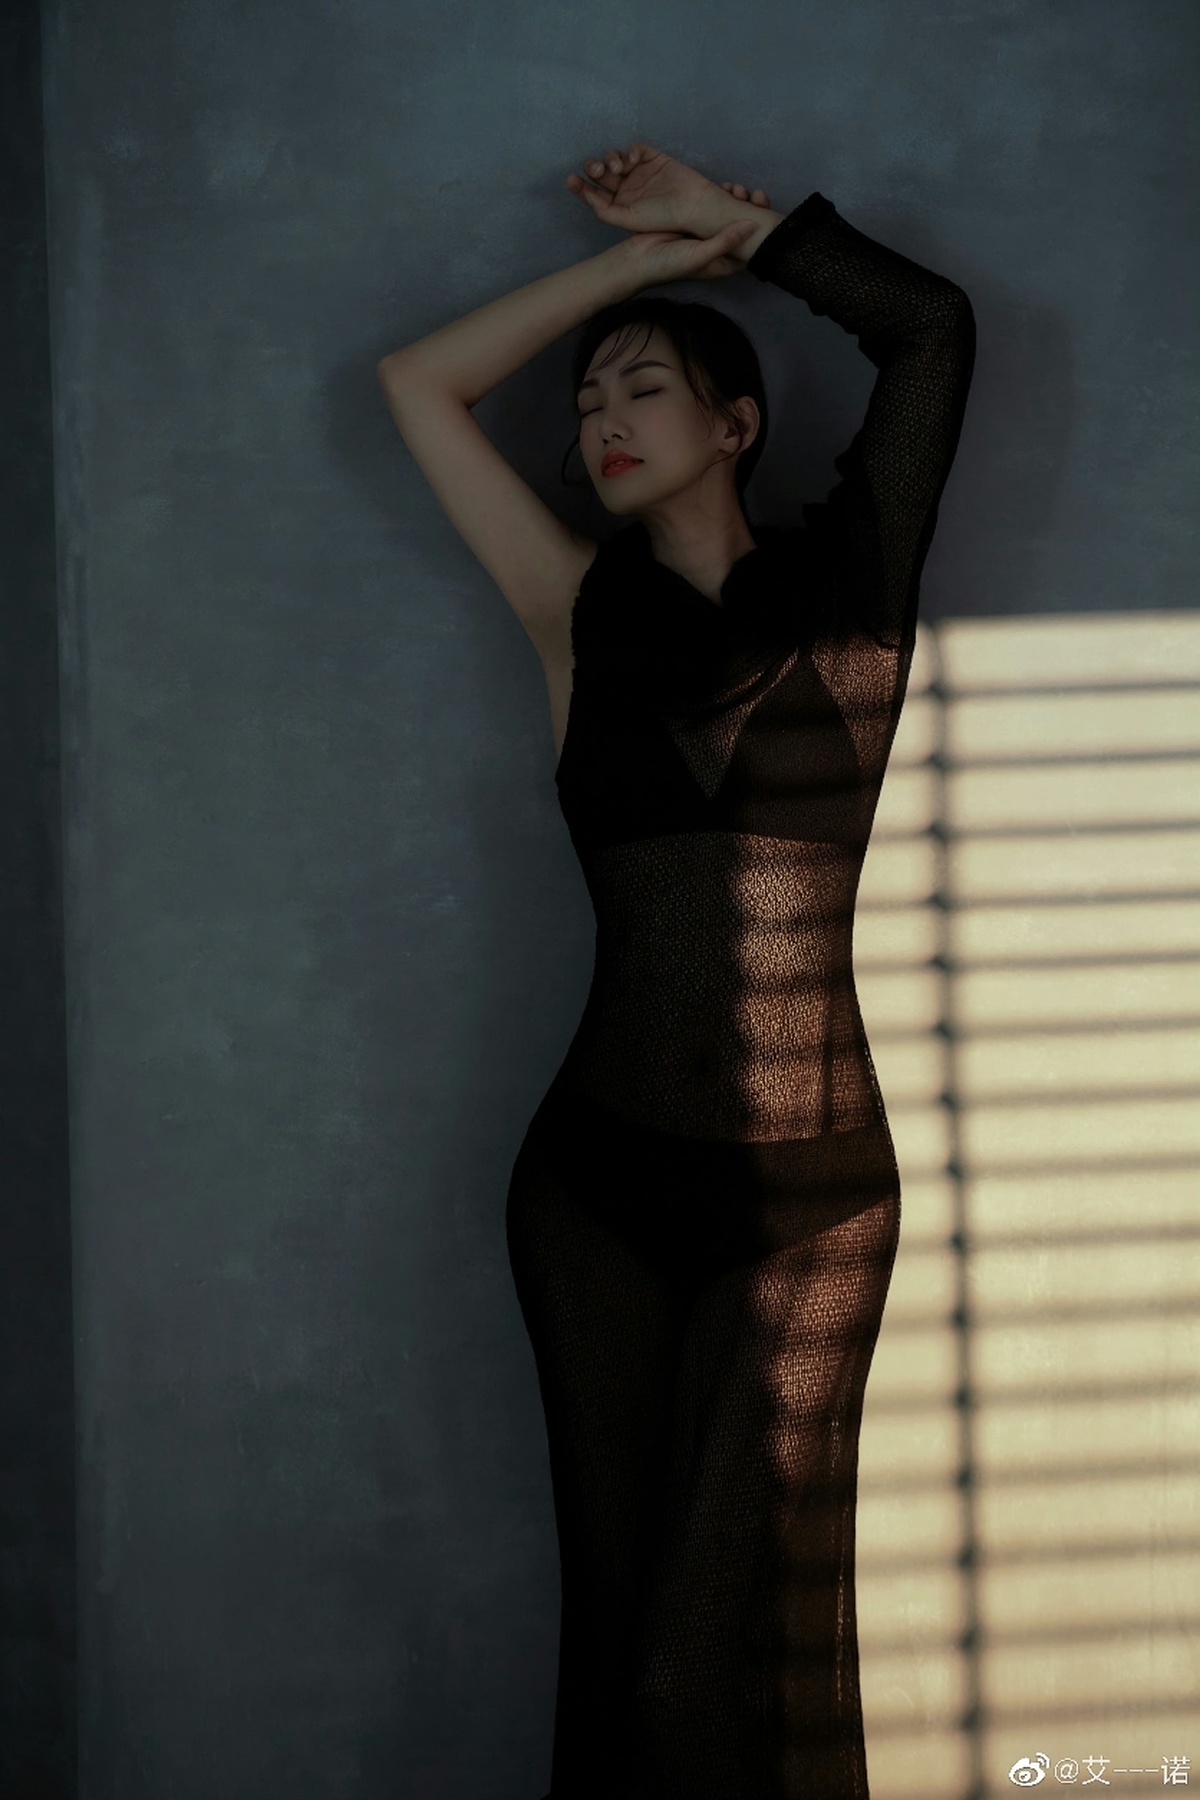 一位穿着黑色连衣裙的年轻女子站在窗前 在墙上投下阴影。